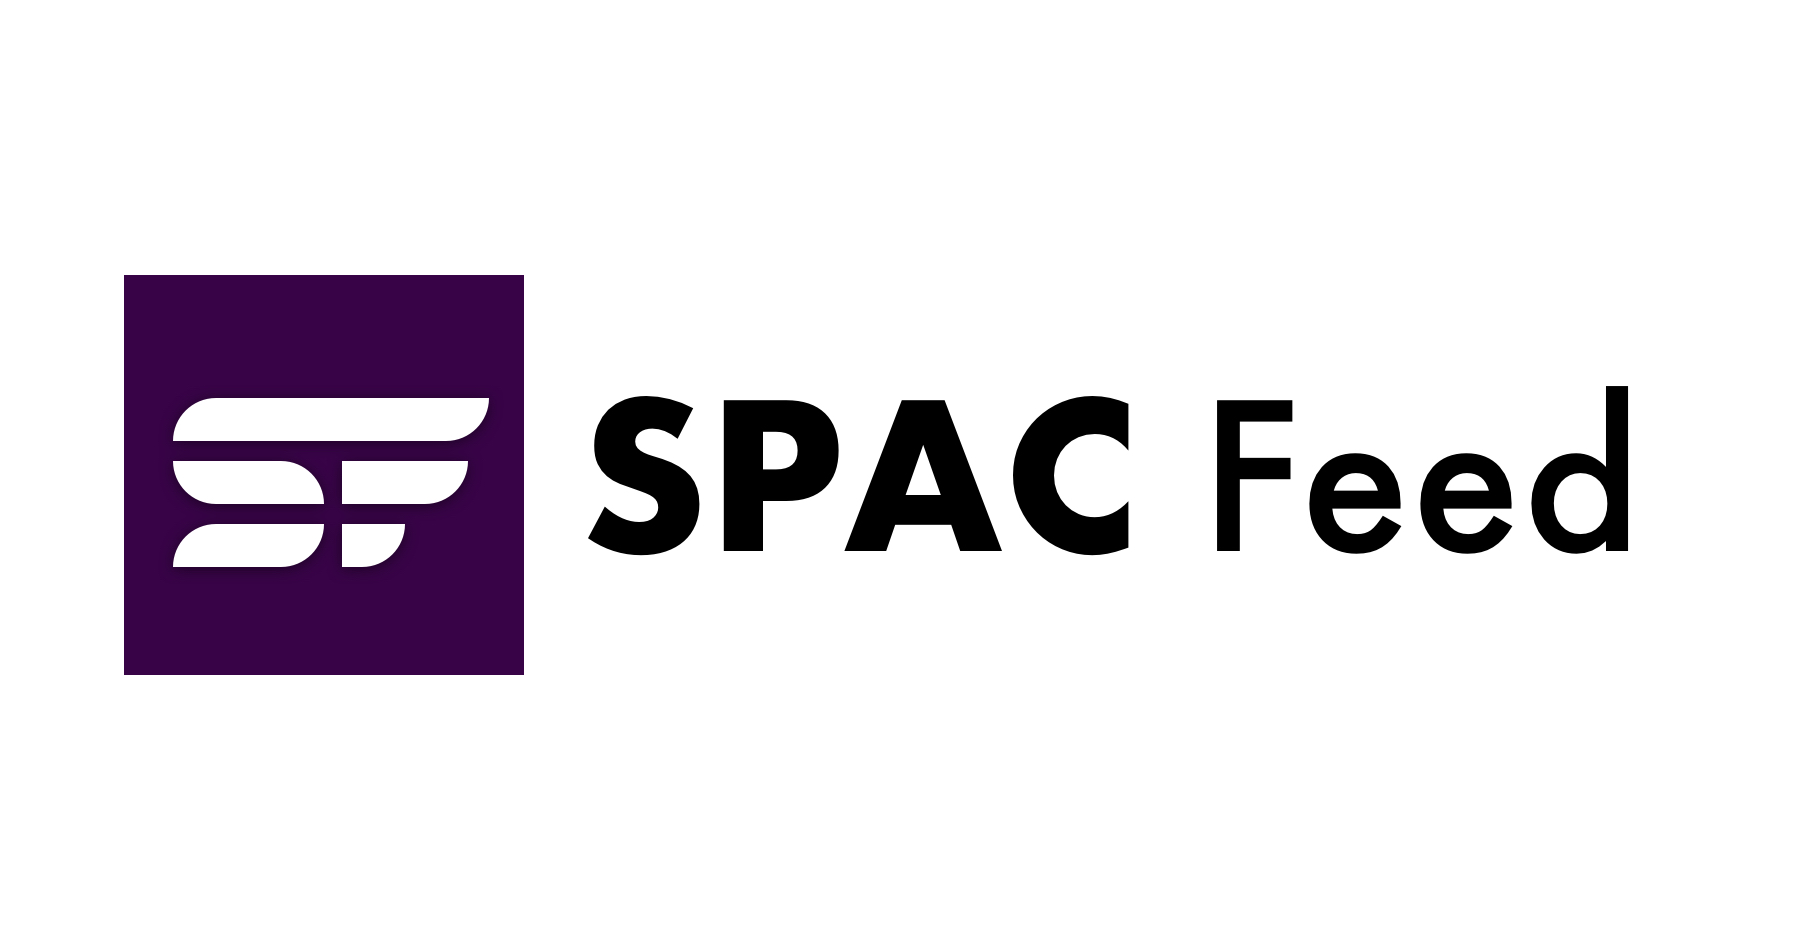 델라웨어 기회 법원은 최근 결정으로 인해 의문이 제기된 SPAC 헌장 개정안을 검증했습니다.